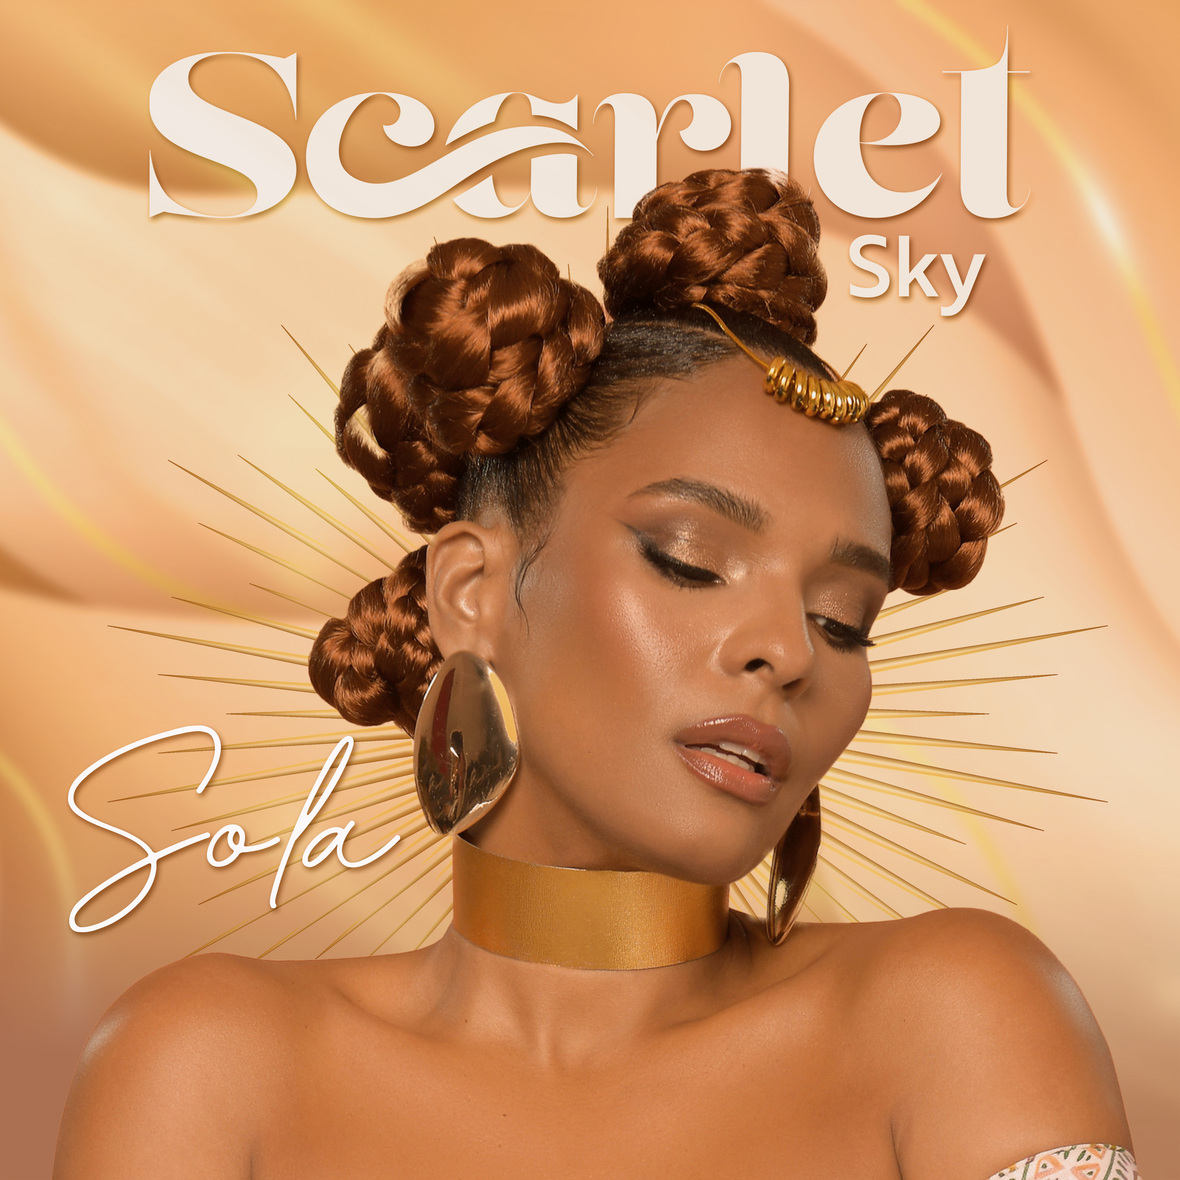 SCARLET SKY lanza nuevo sencillo “Sola”